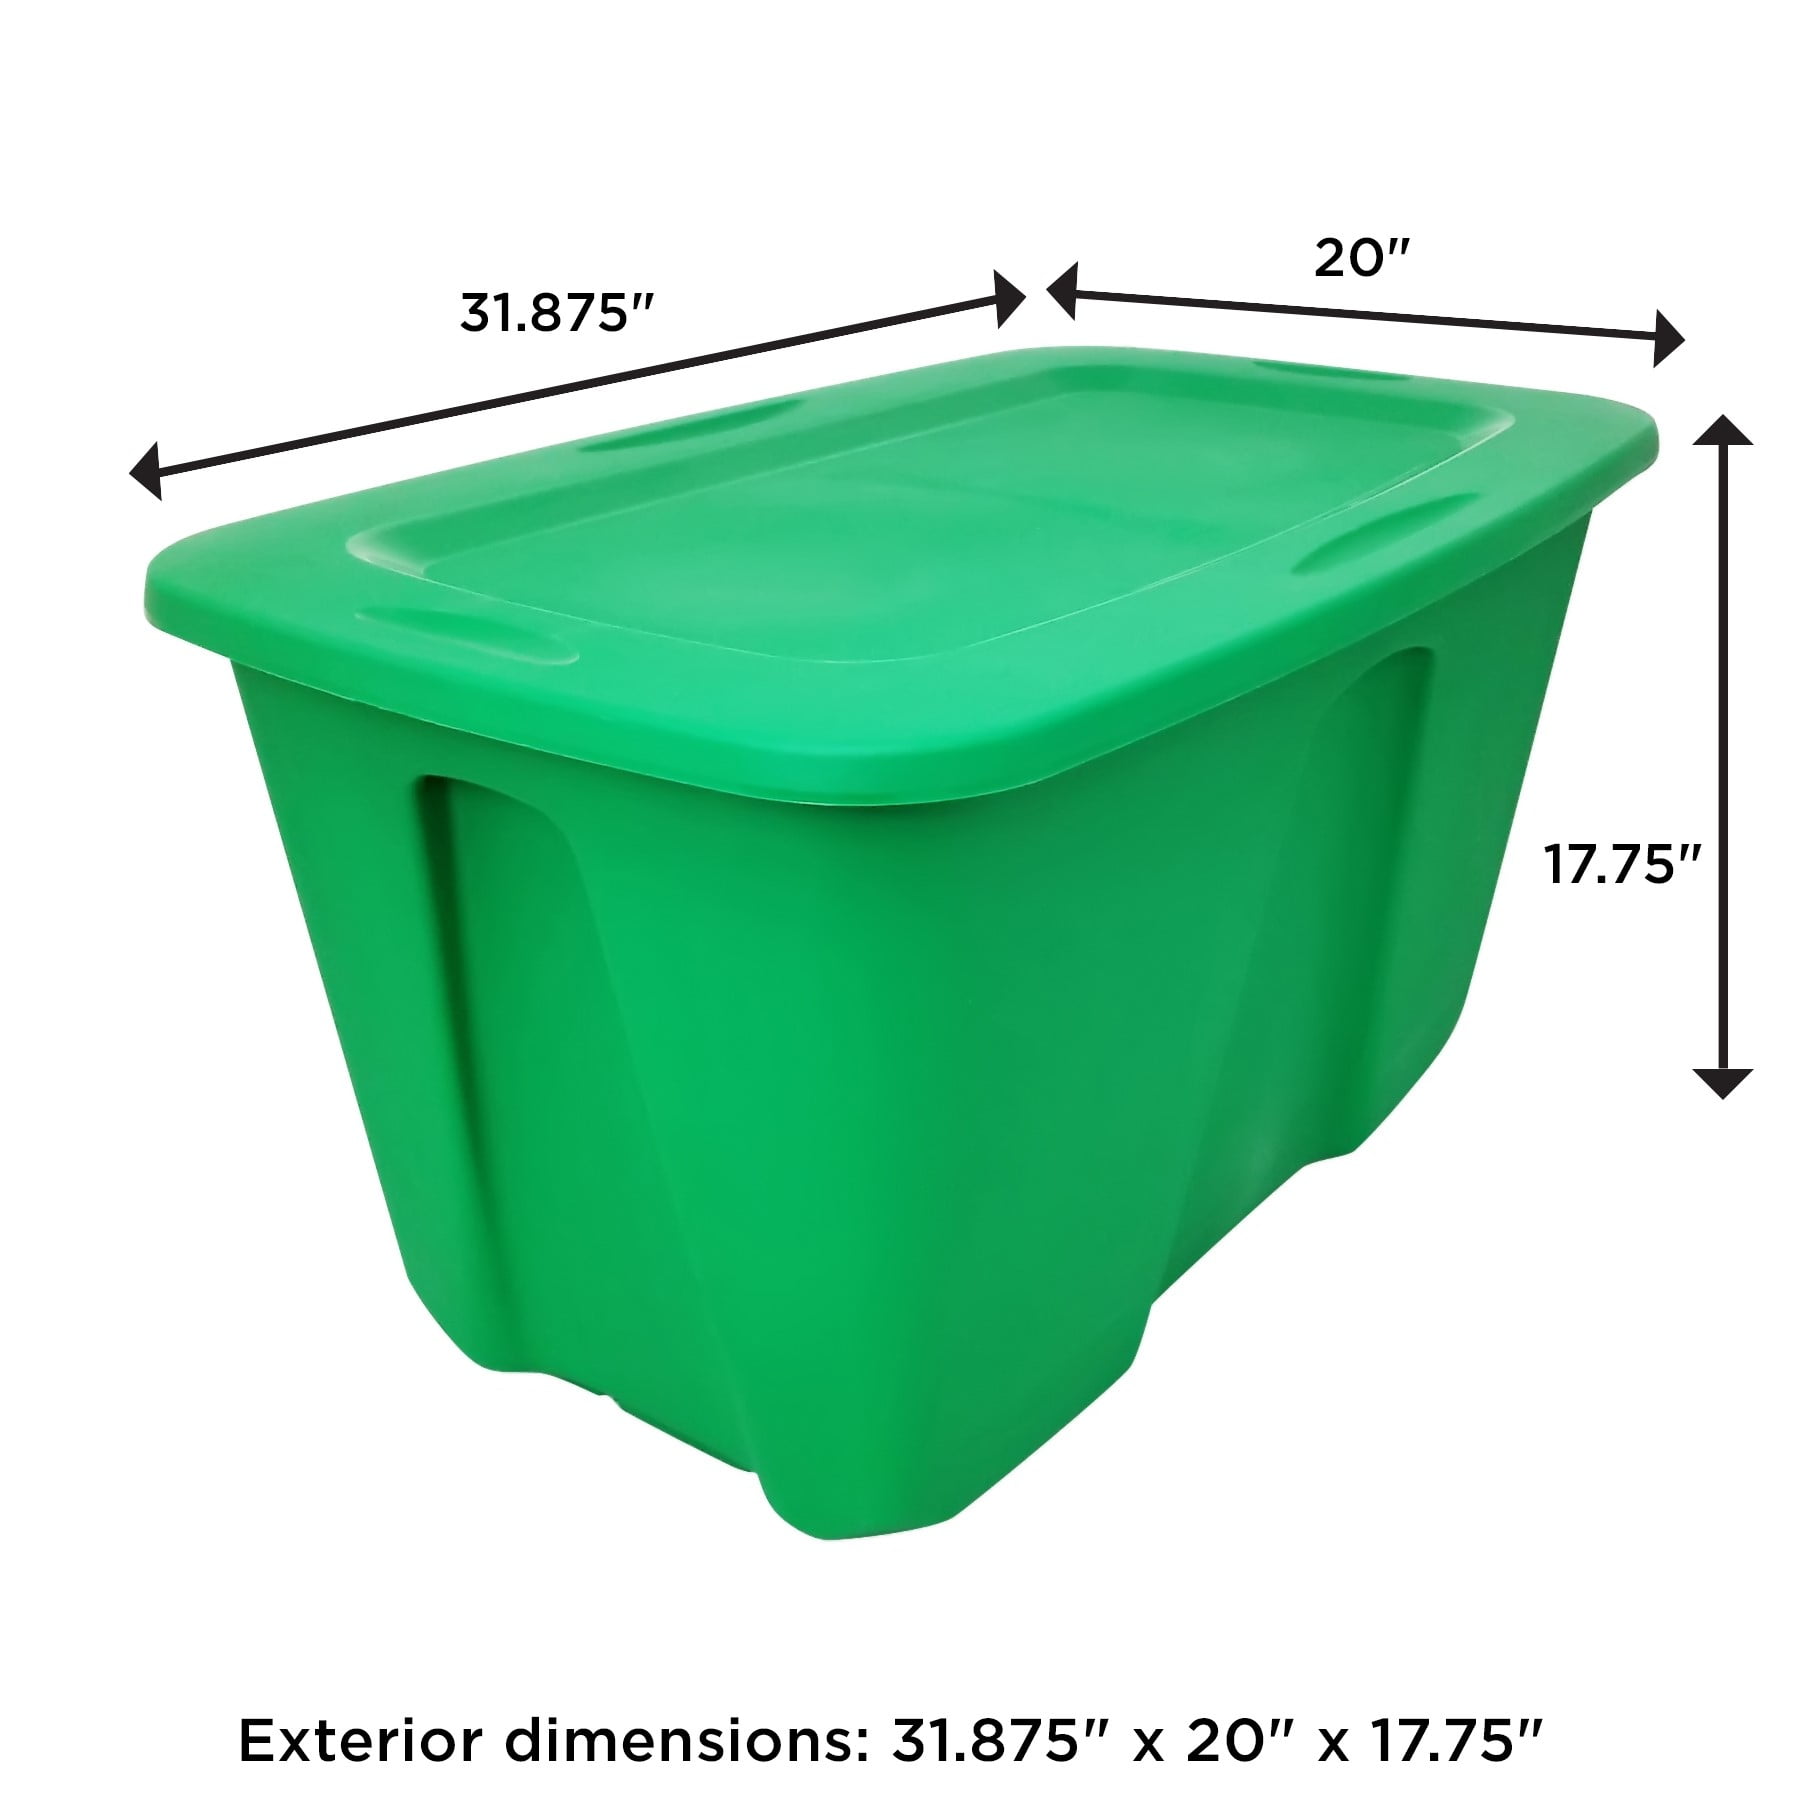 Lime Green Plastic Multi-Purpose Storage Bin,14 x 9.25 x 7.50 Inches, Mardel